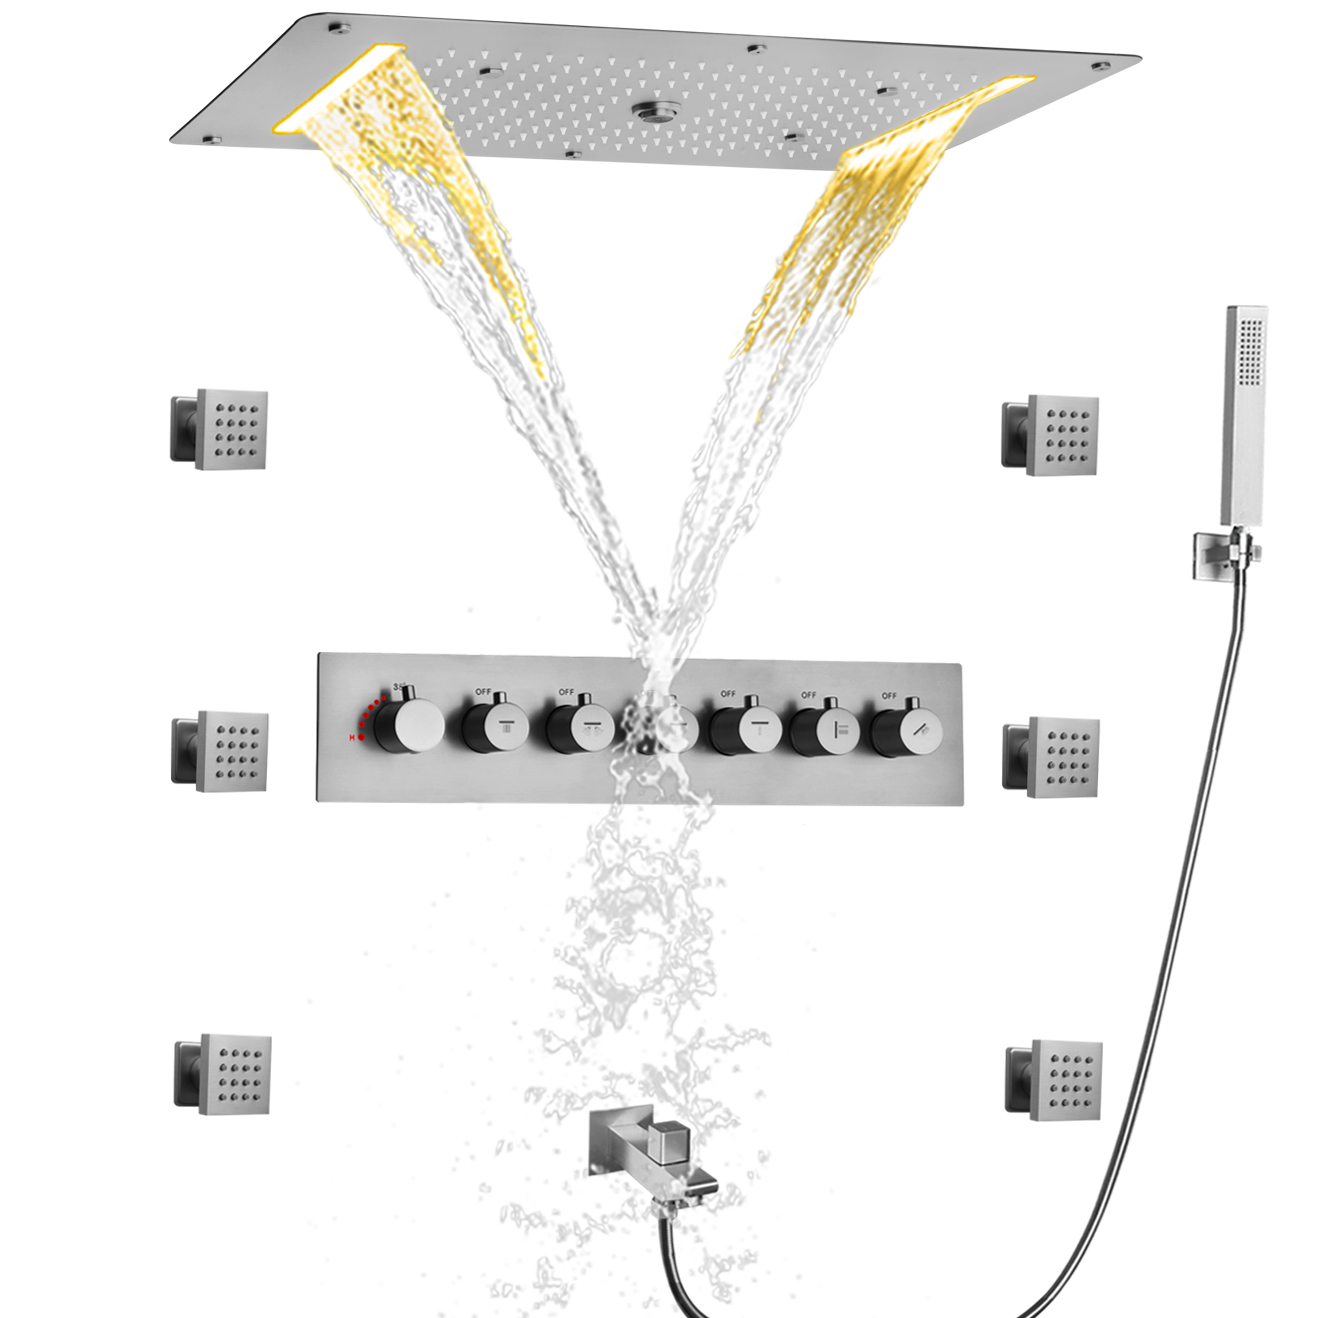 Sistema de cabezal de ducha multifunción grande de níquel cepillado, Panel mezclador de ducha termostático montado en la pared, lluvia en cascada